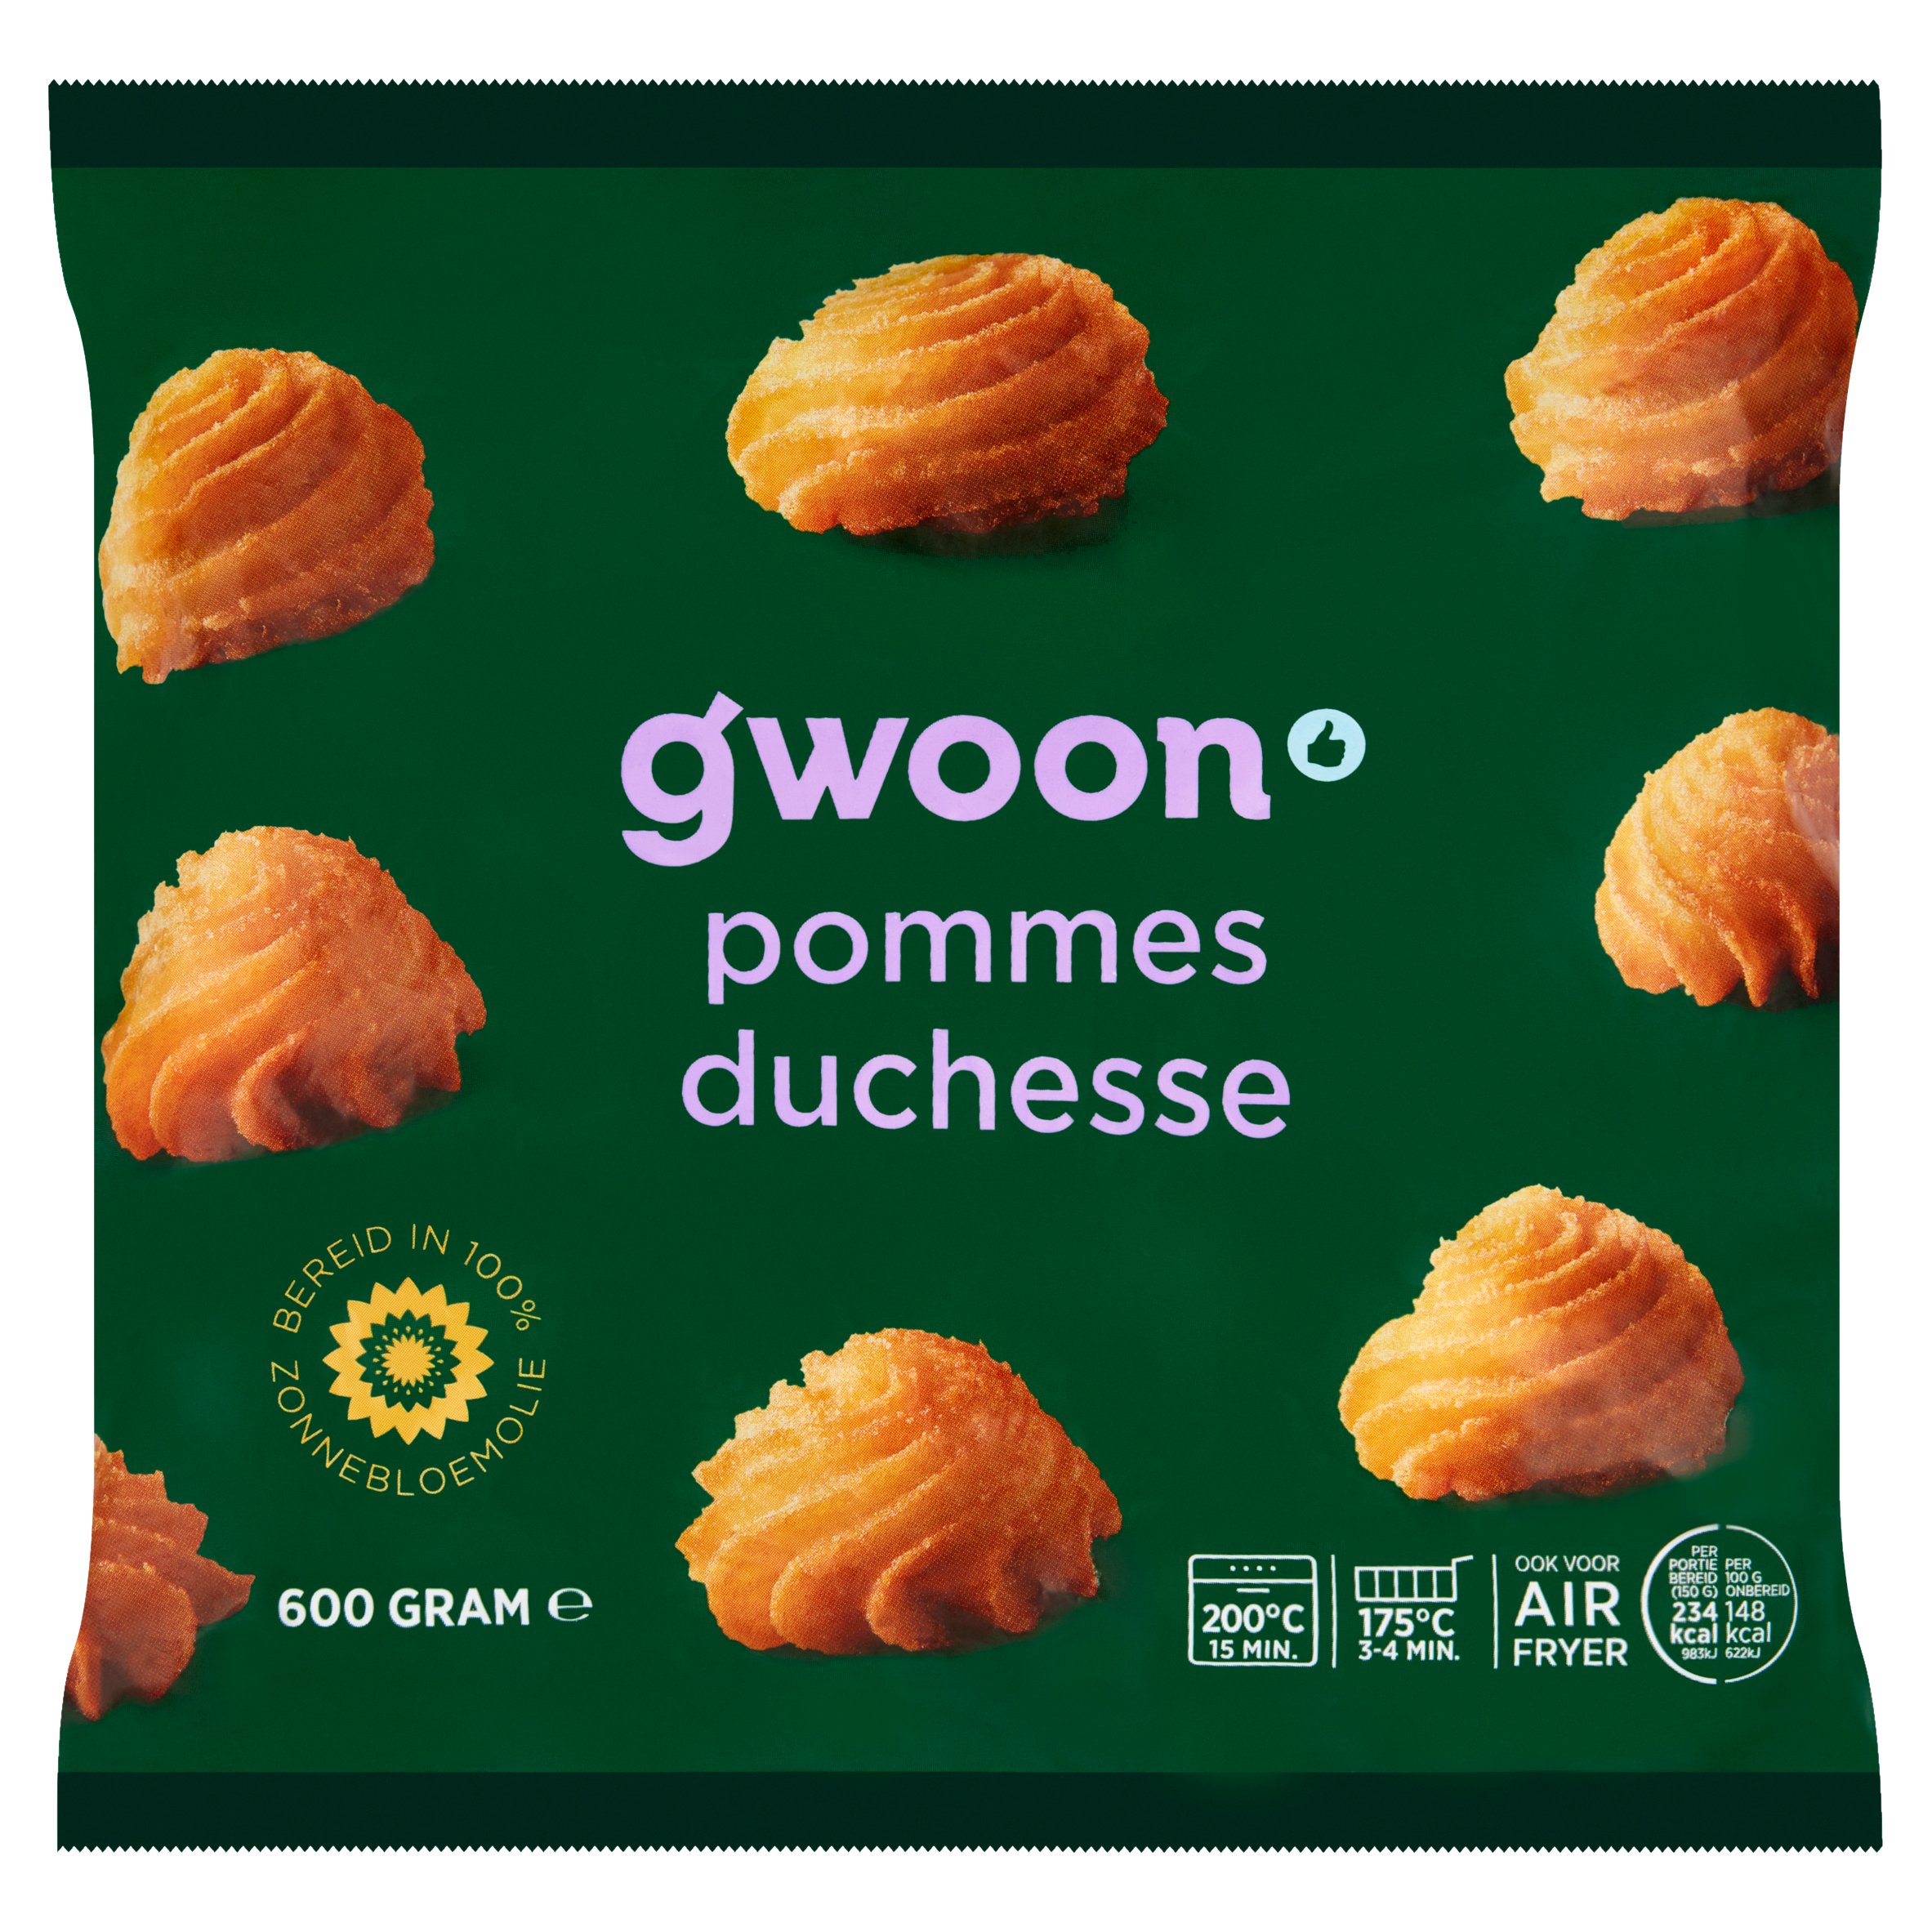 G’woon pommes duchesse